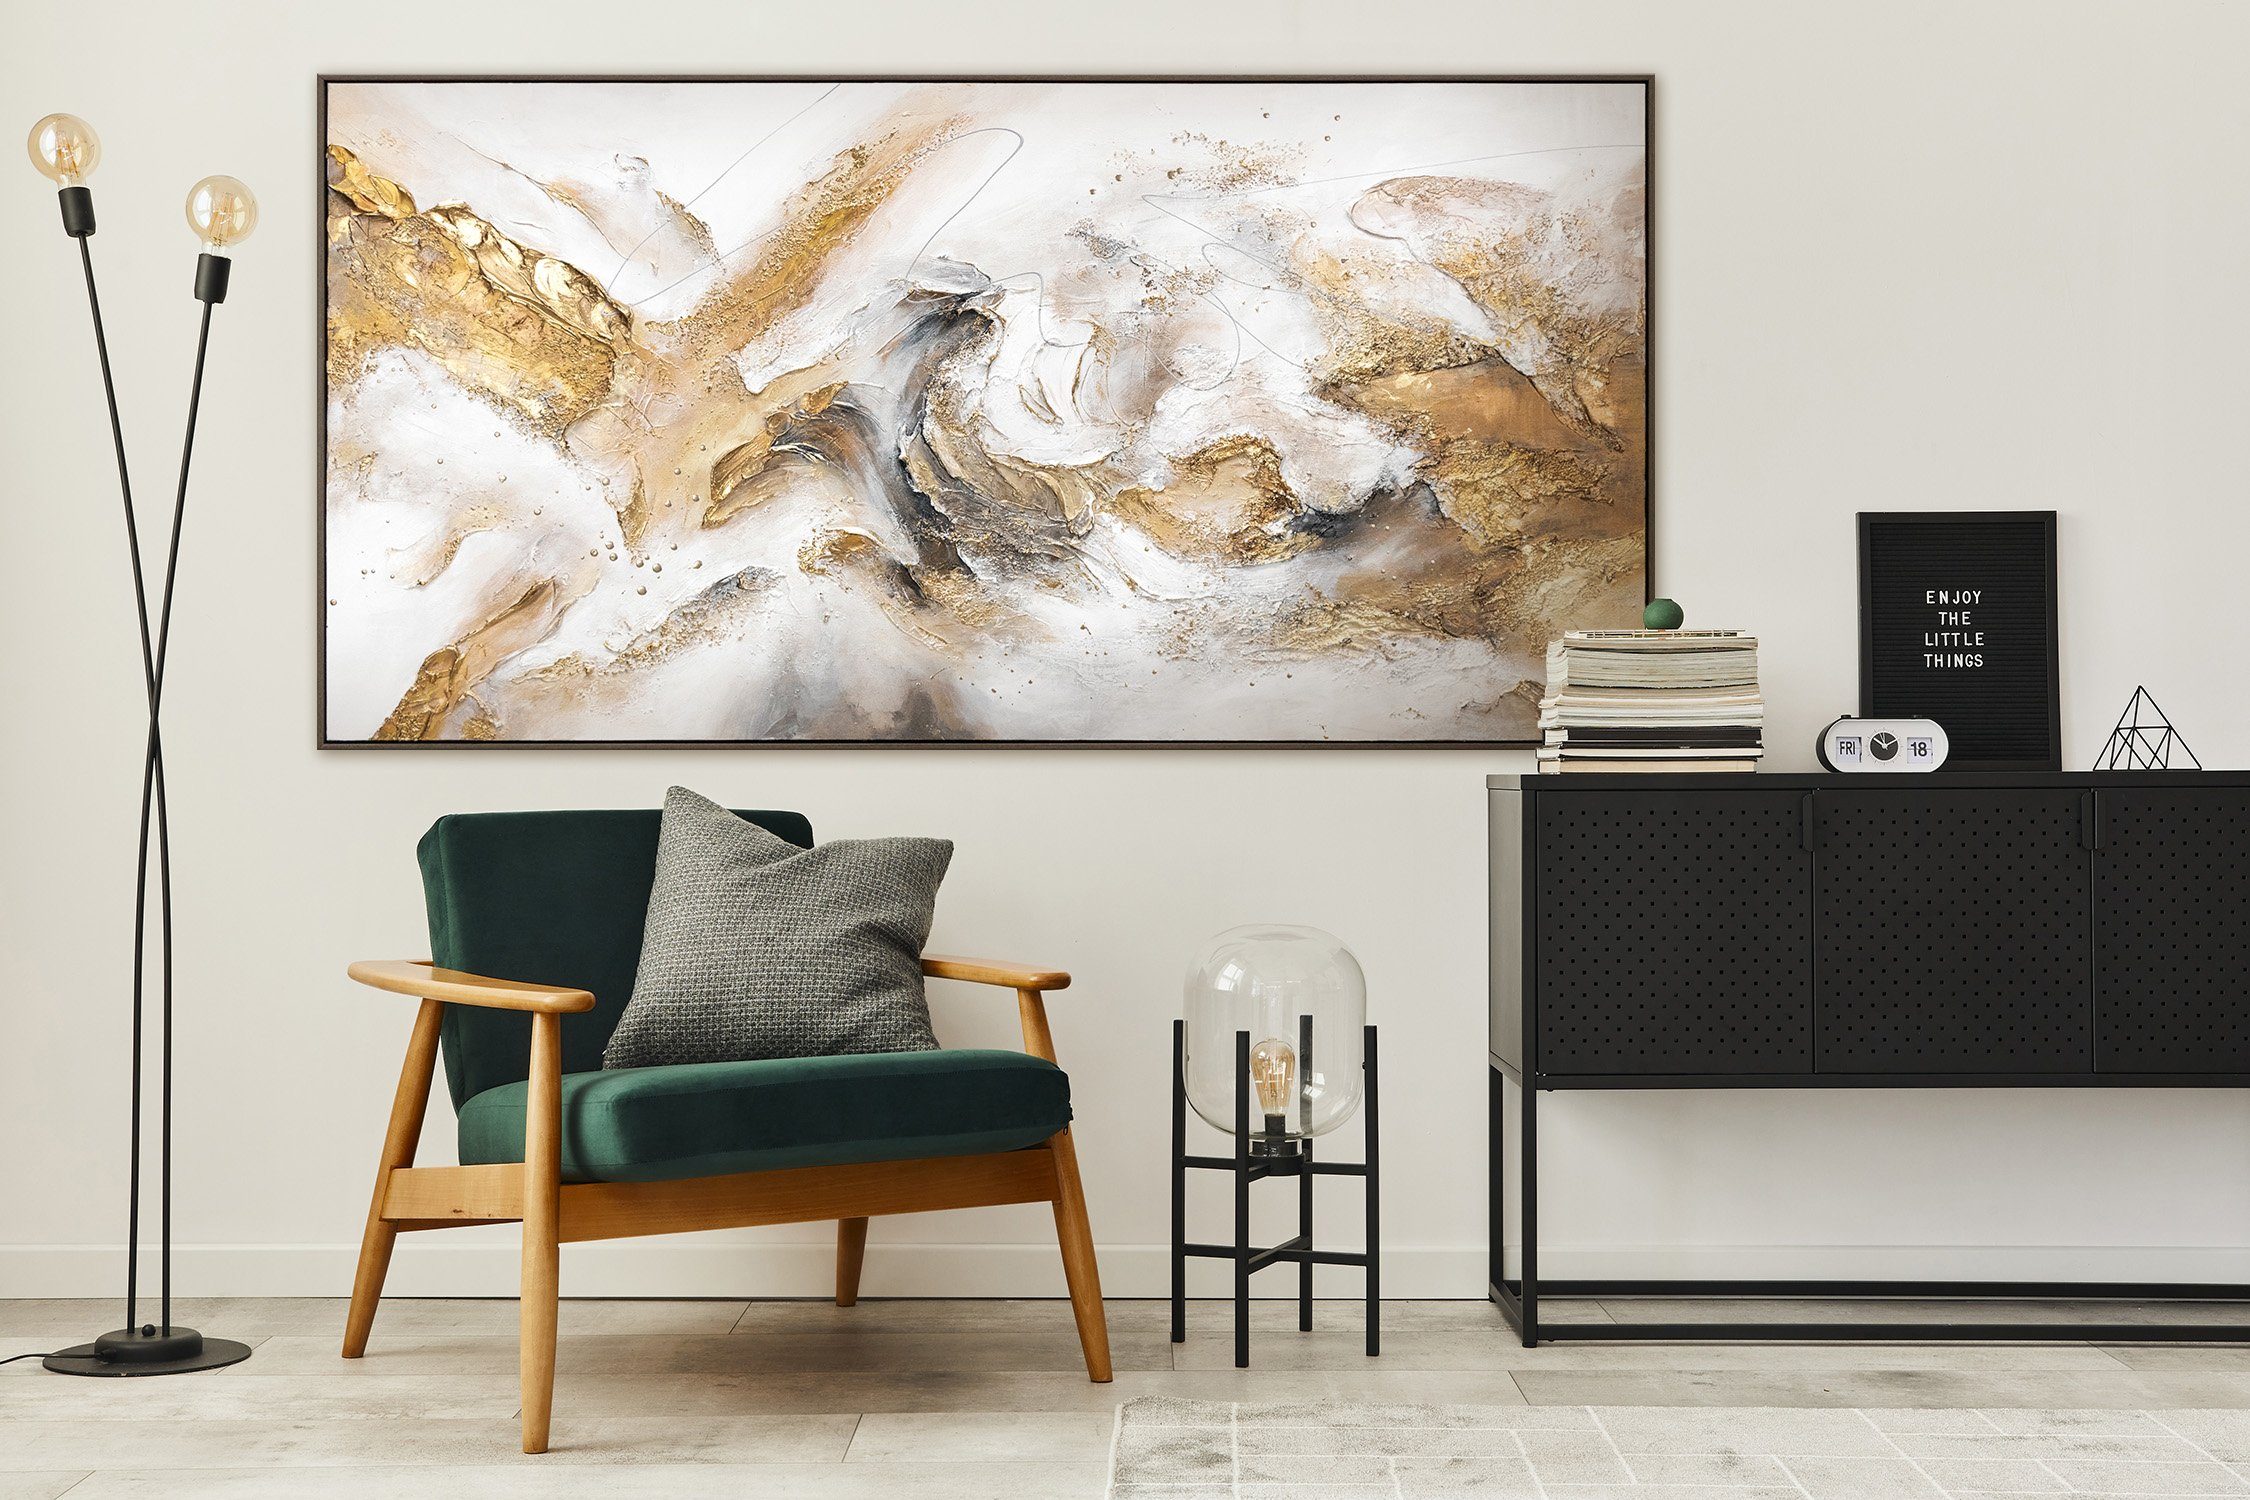 YS-Art Gemälde Konsonanz, Goldenes Rahmen Leinwand Abstraktes Bild Handgemalt mit